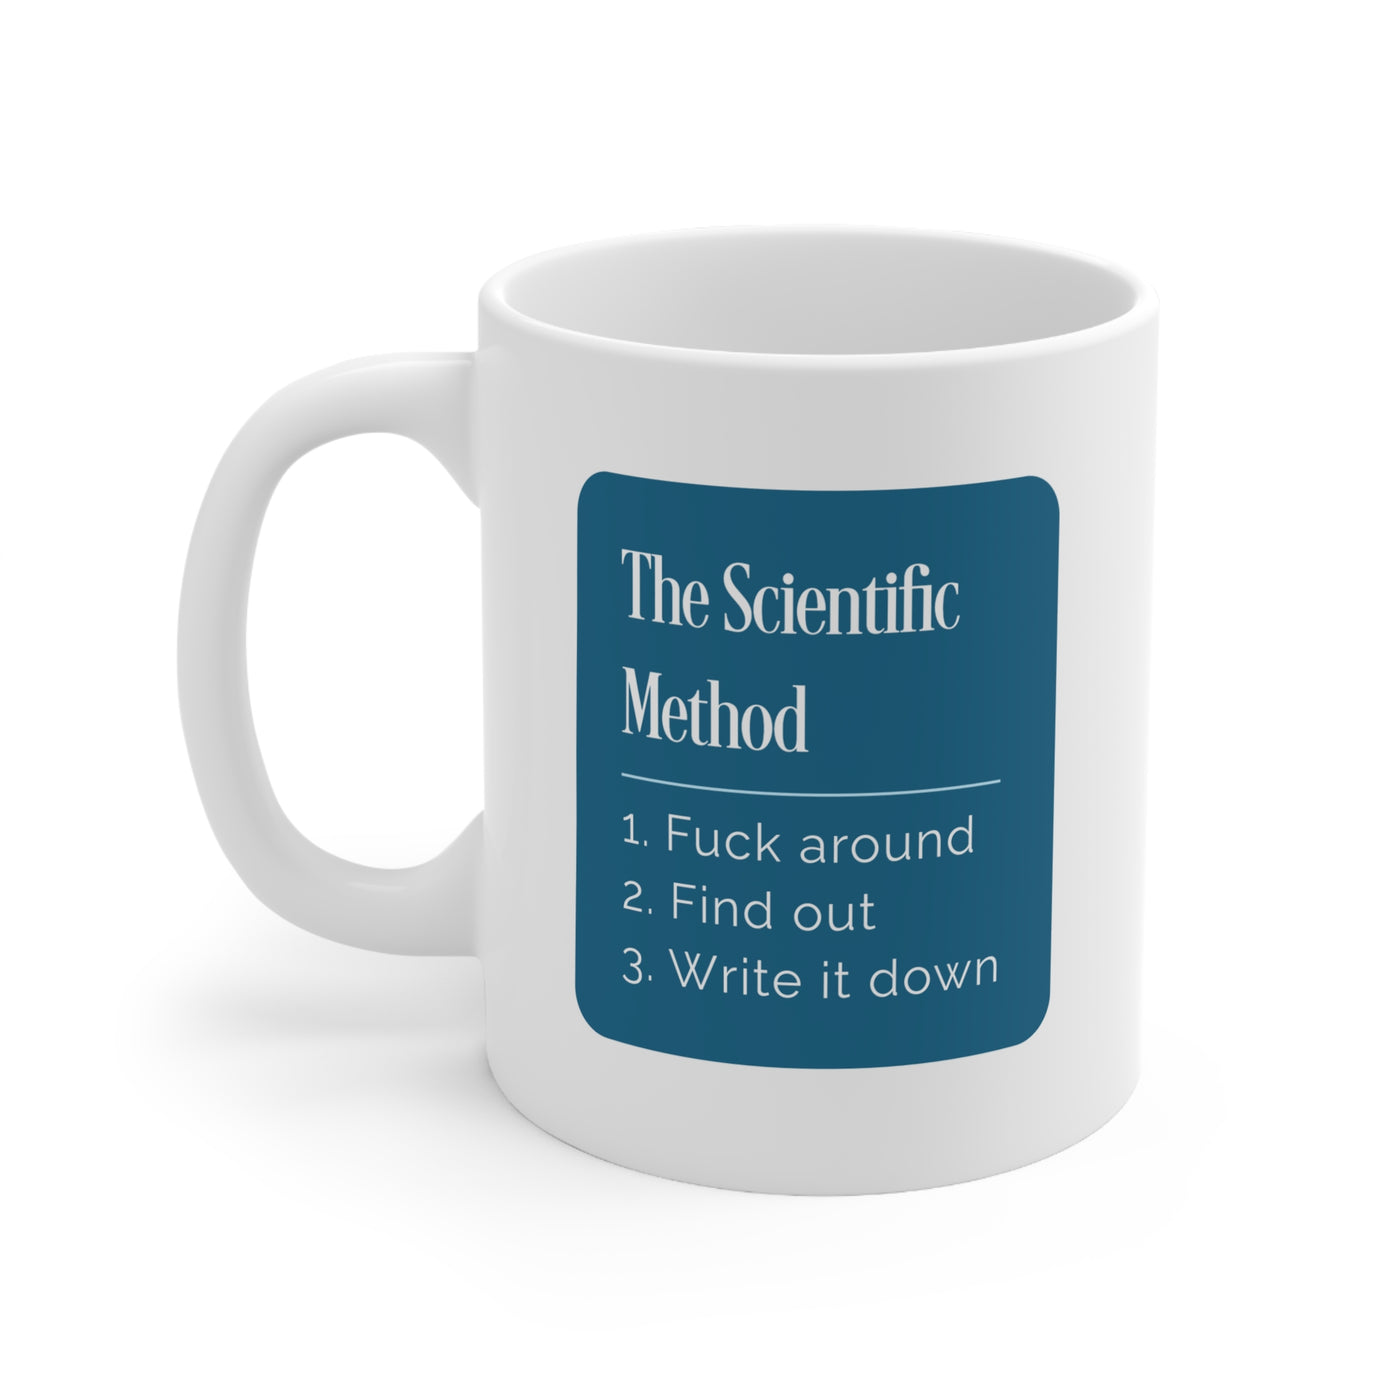 The Scientific Method - Ceramic Mug 11oz